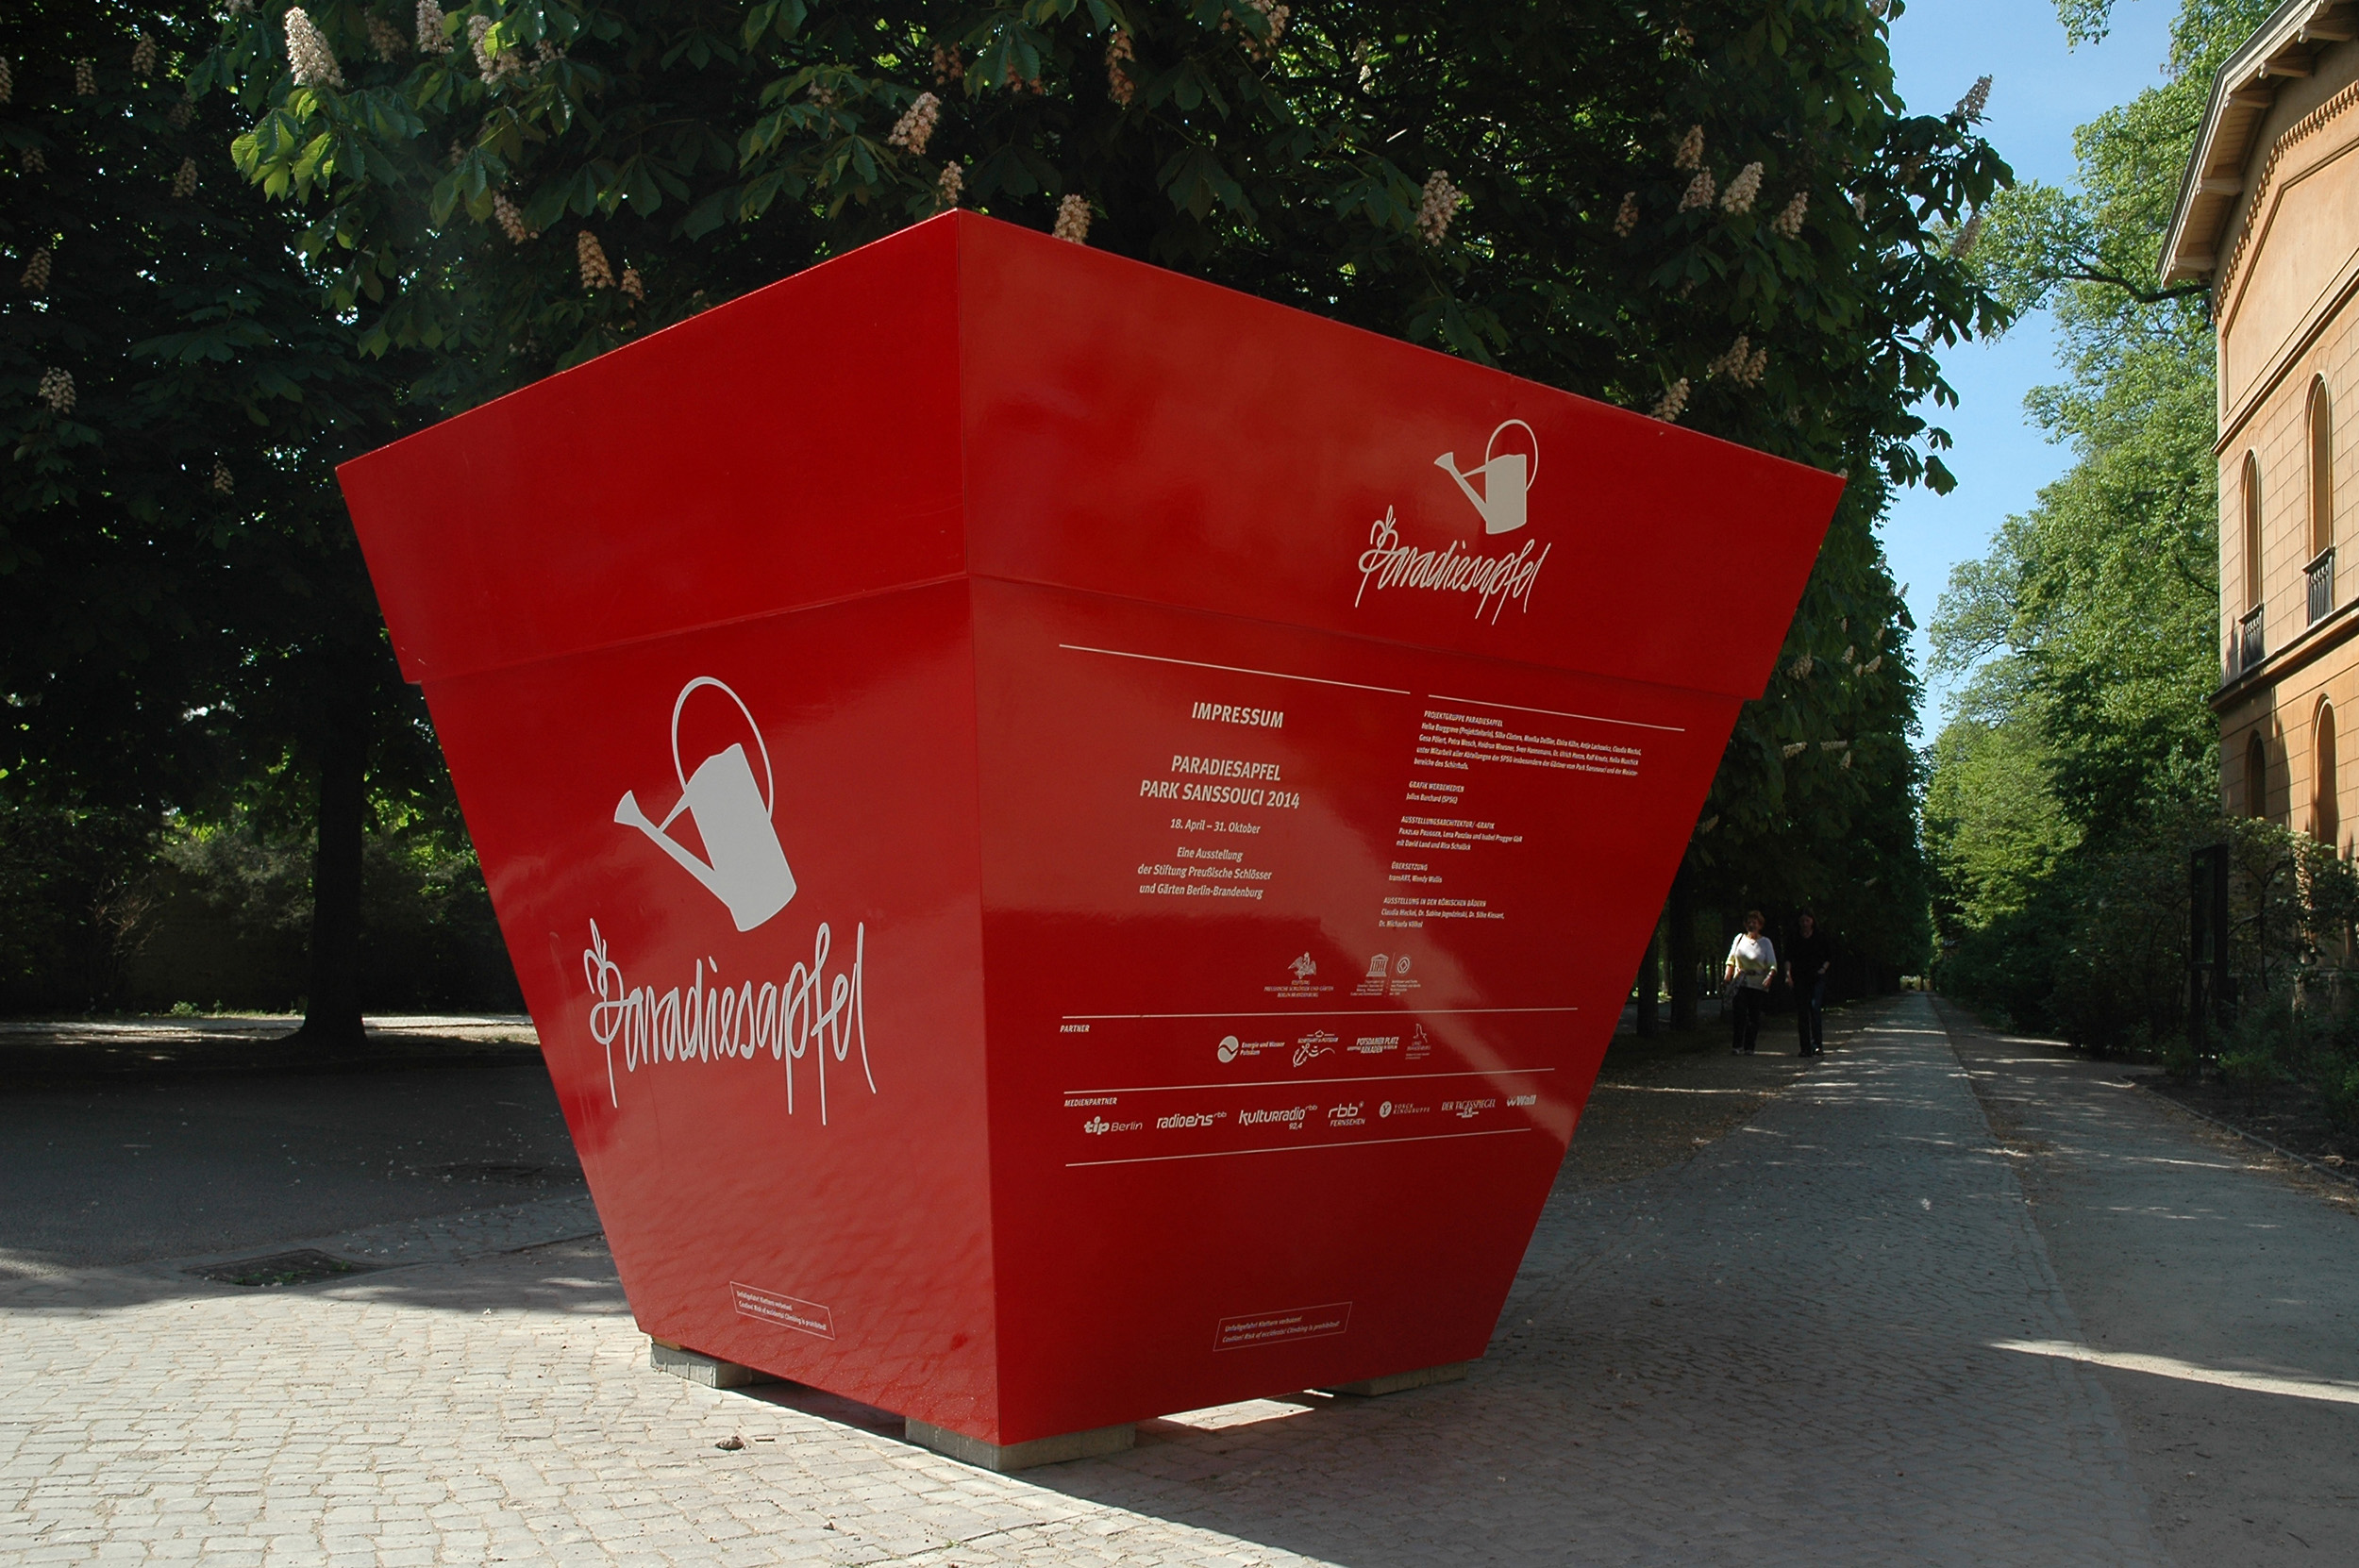 Große, würfelförmige Informationsskultptur zur Outdoorausstellung Paradiesapfel.